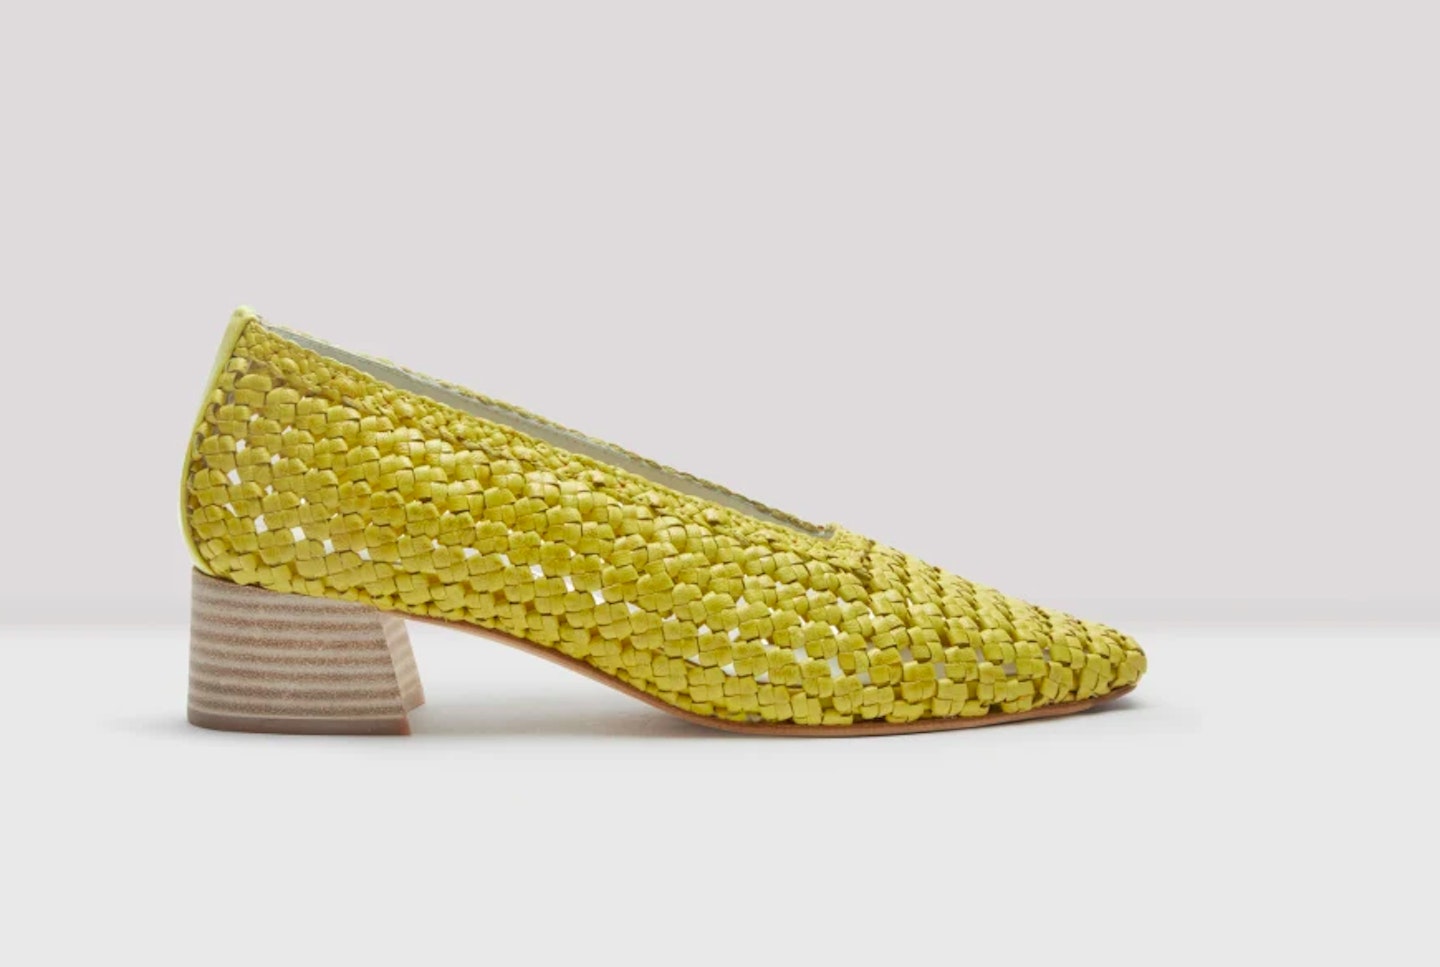 Gemini - Miista, Loirane Sunshine Woven Leather Heels, £225